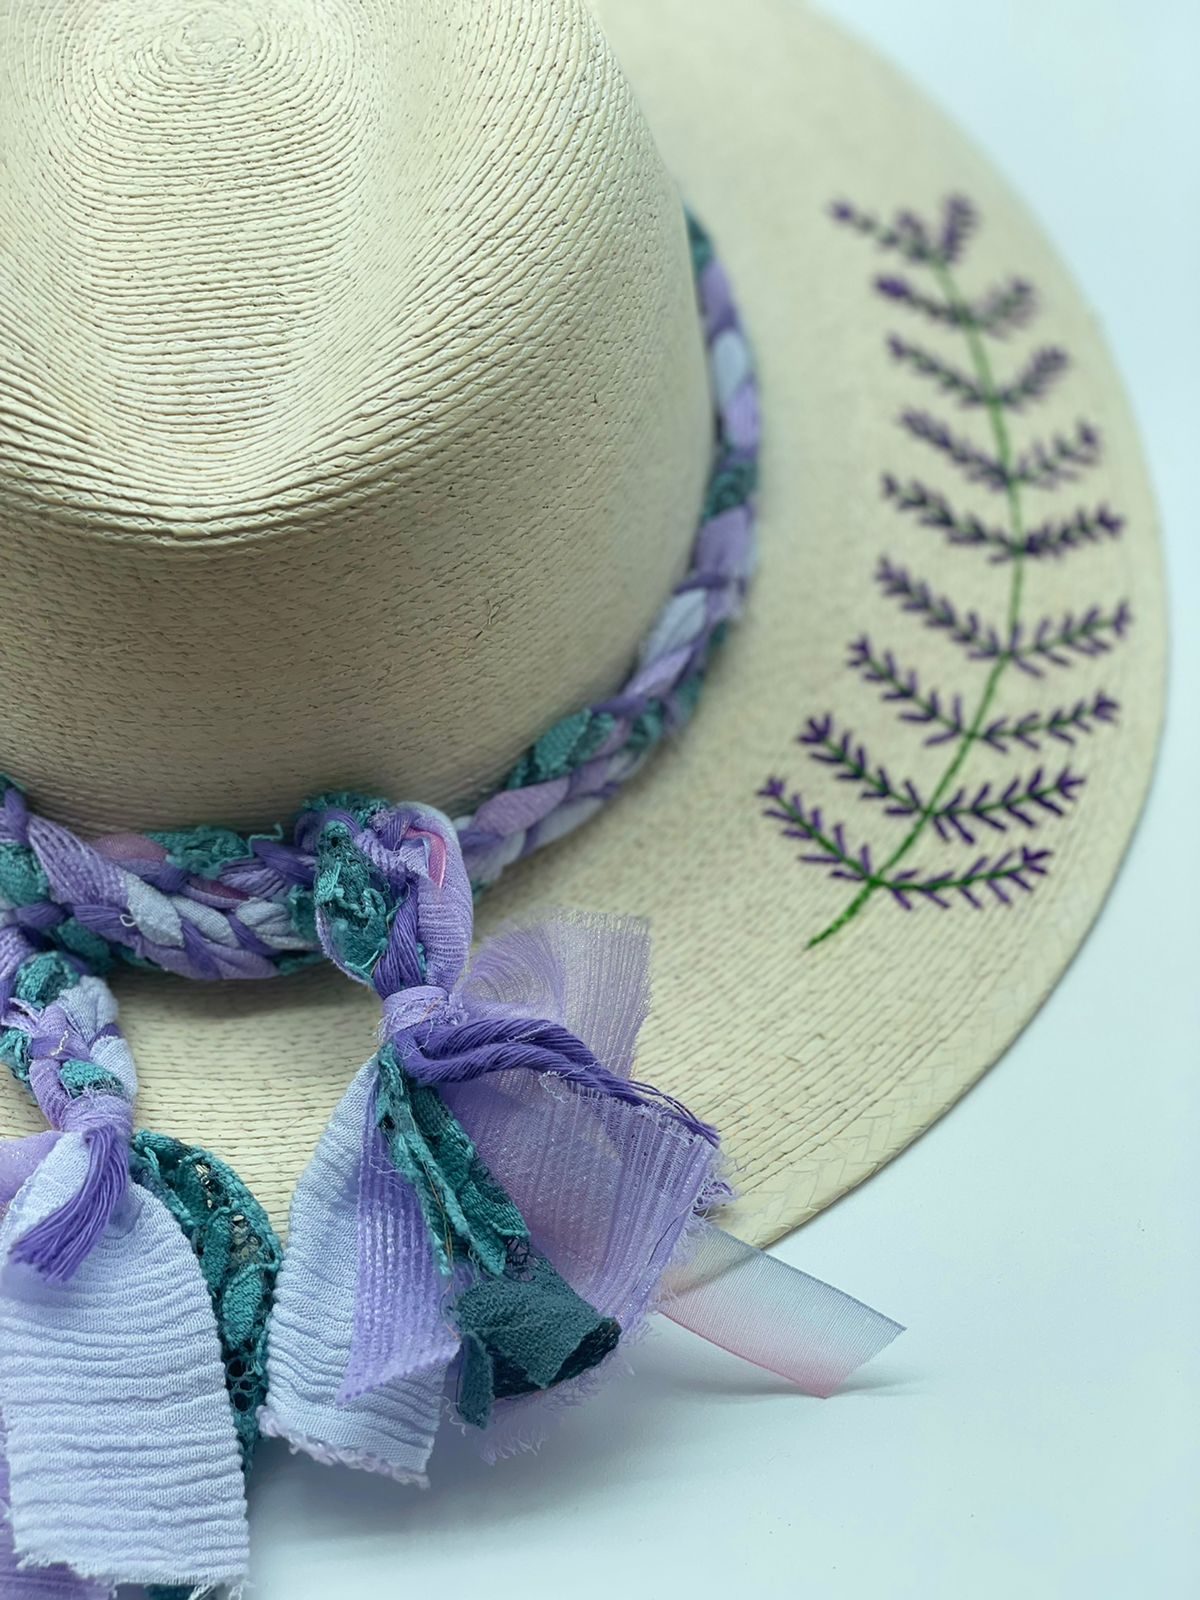 Exclusive Lavender Hat by Corazon Playero - Preorder